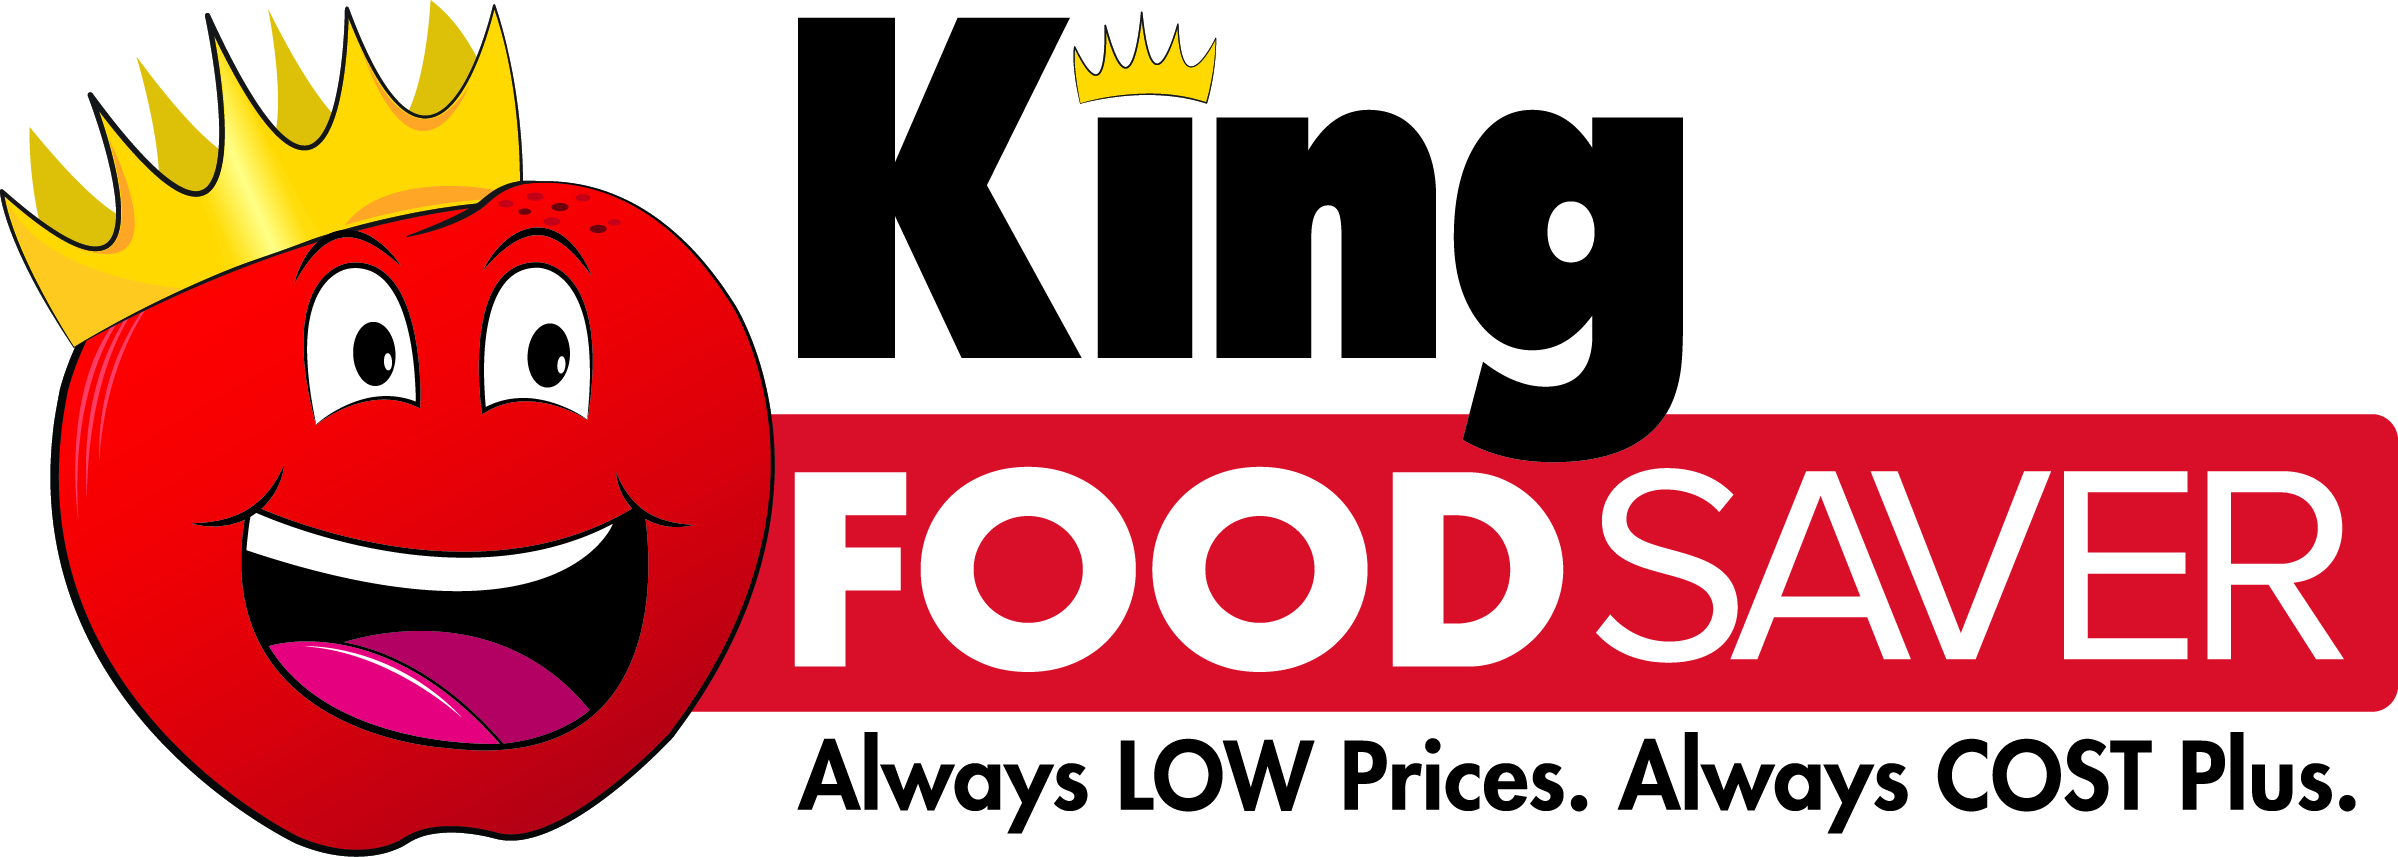 King Food Saver Logo